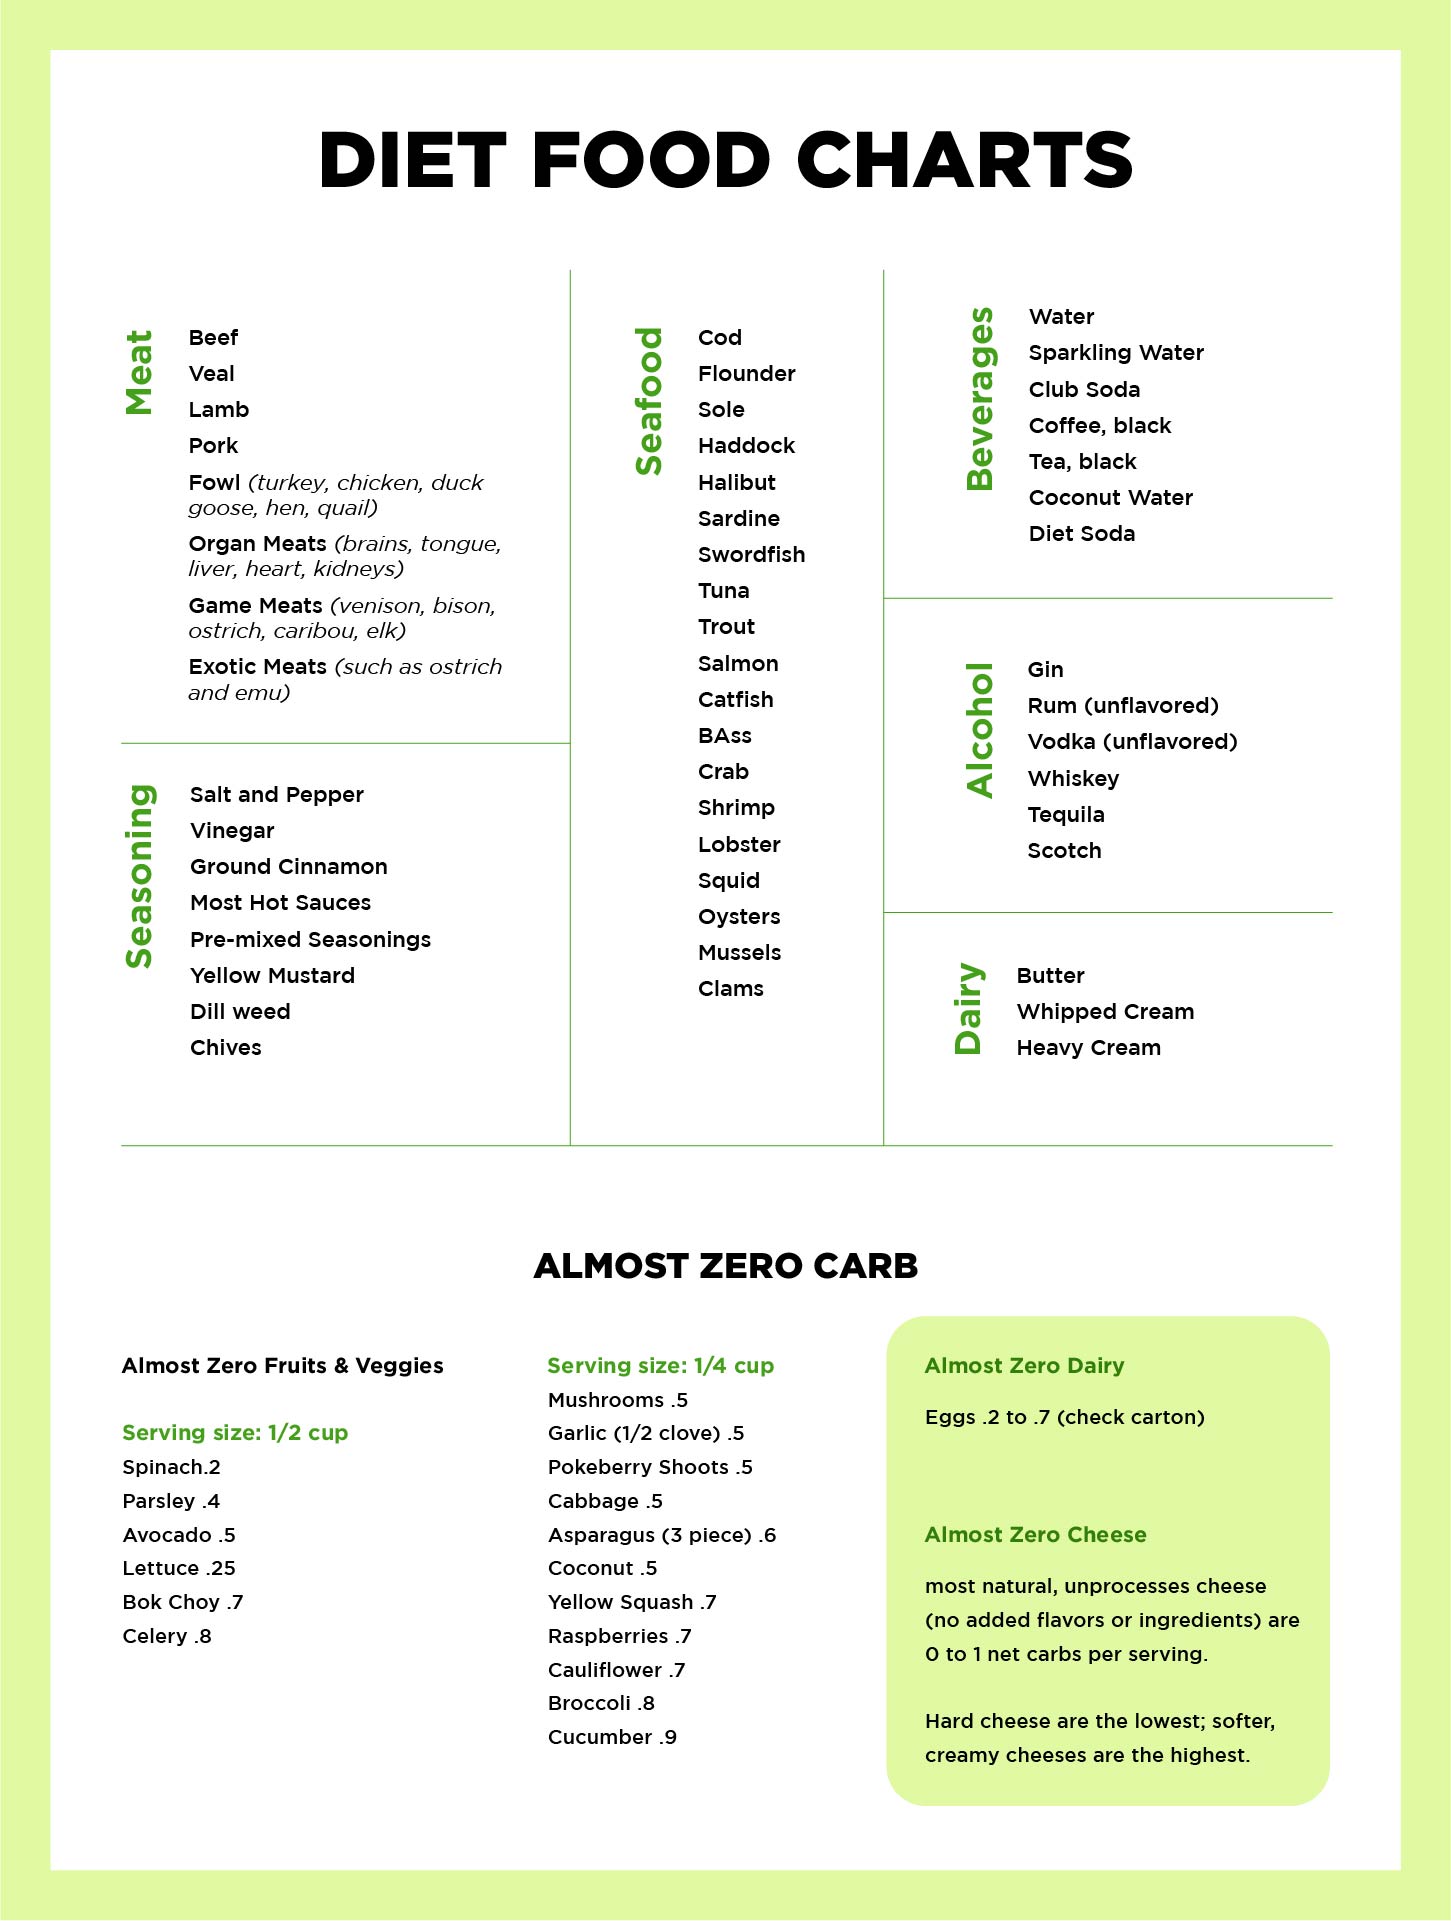 Diet Food Charts Printable